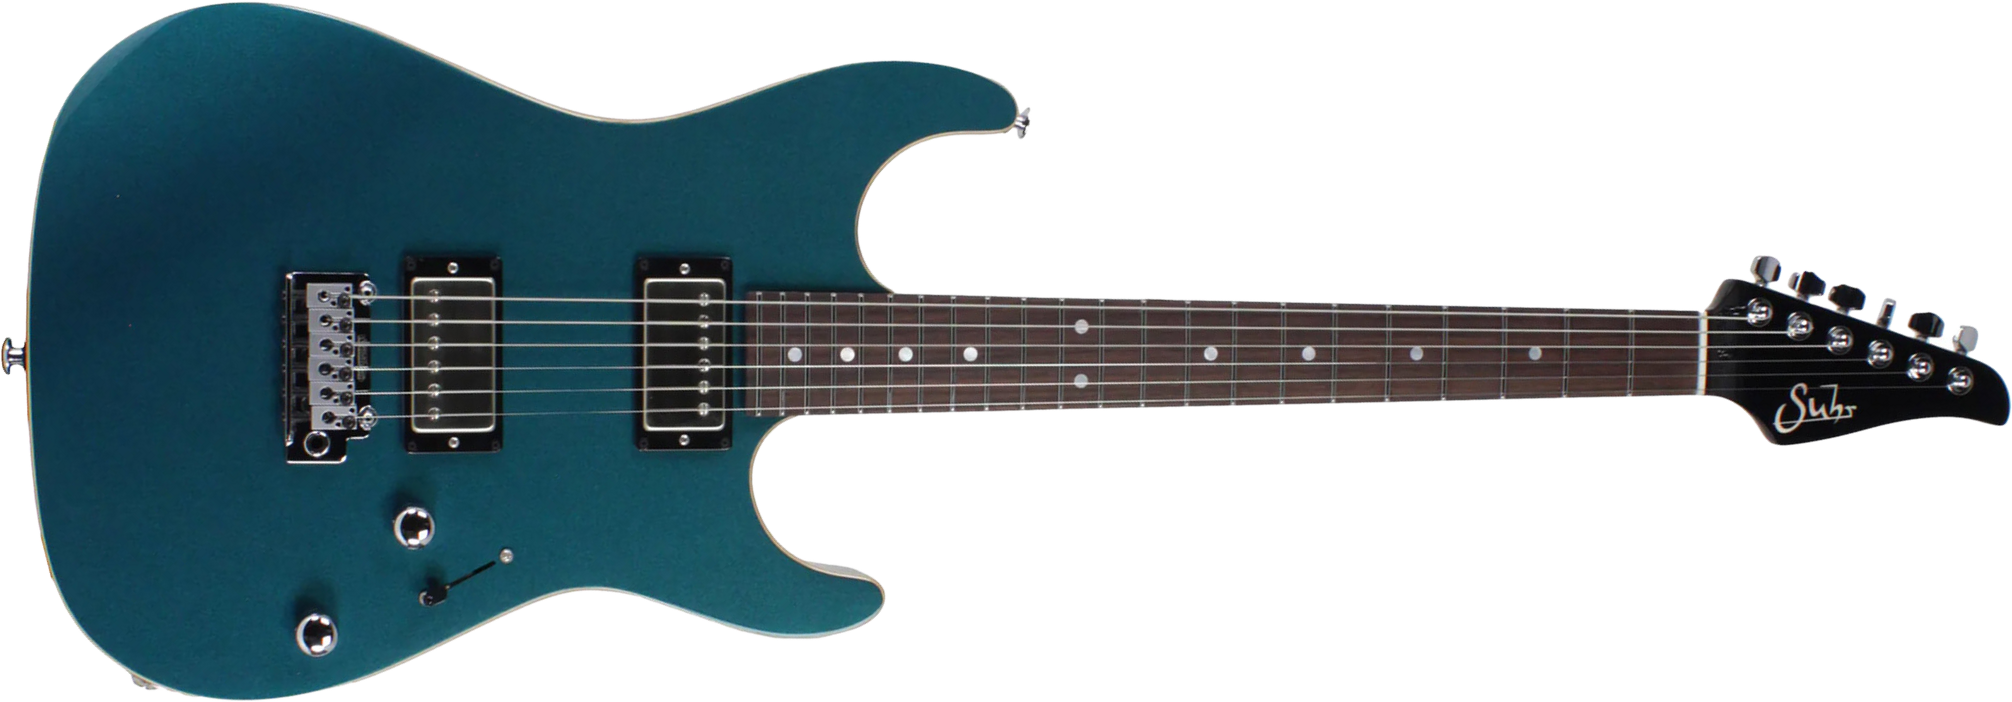 Suhr Pete Thorn Standard 01-sig-0012 Signature 2h Trem Rw - Ocean Turquoise Metallic - Elektrische gitaar in Str-vorm - Main picture